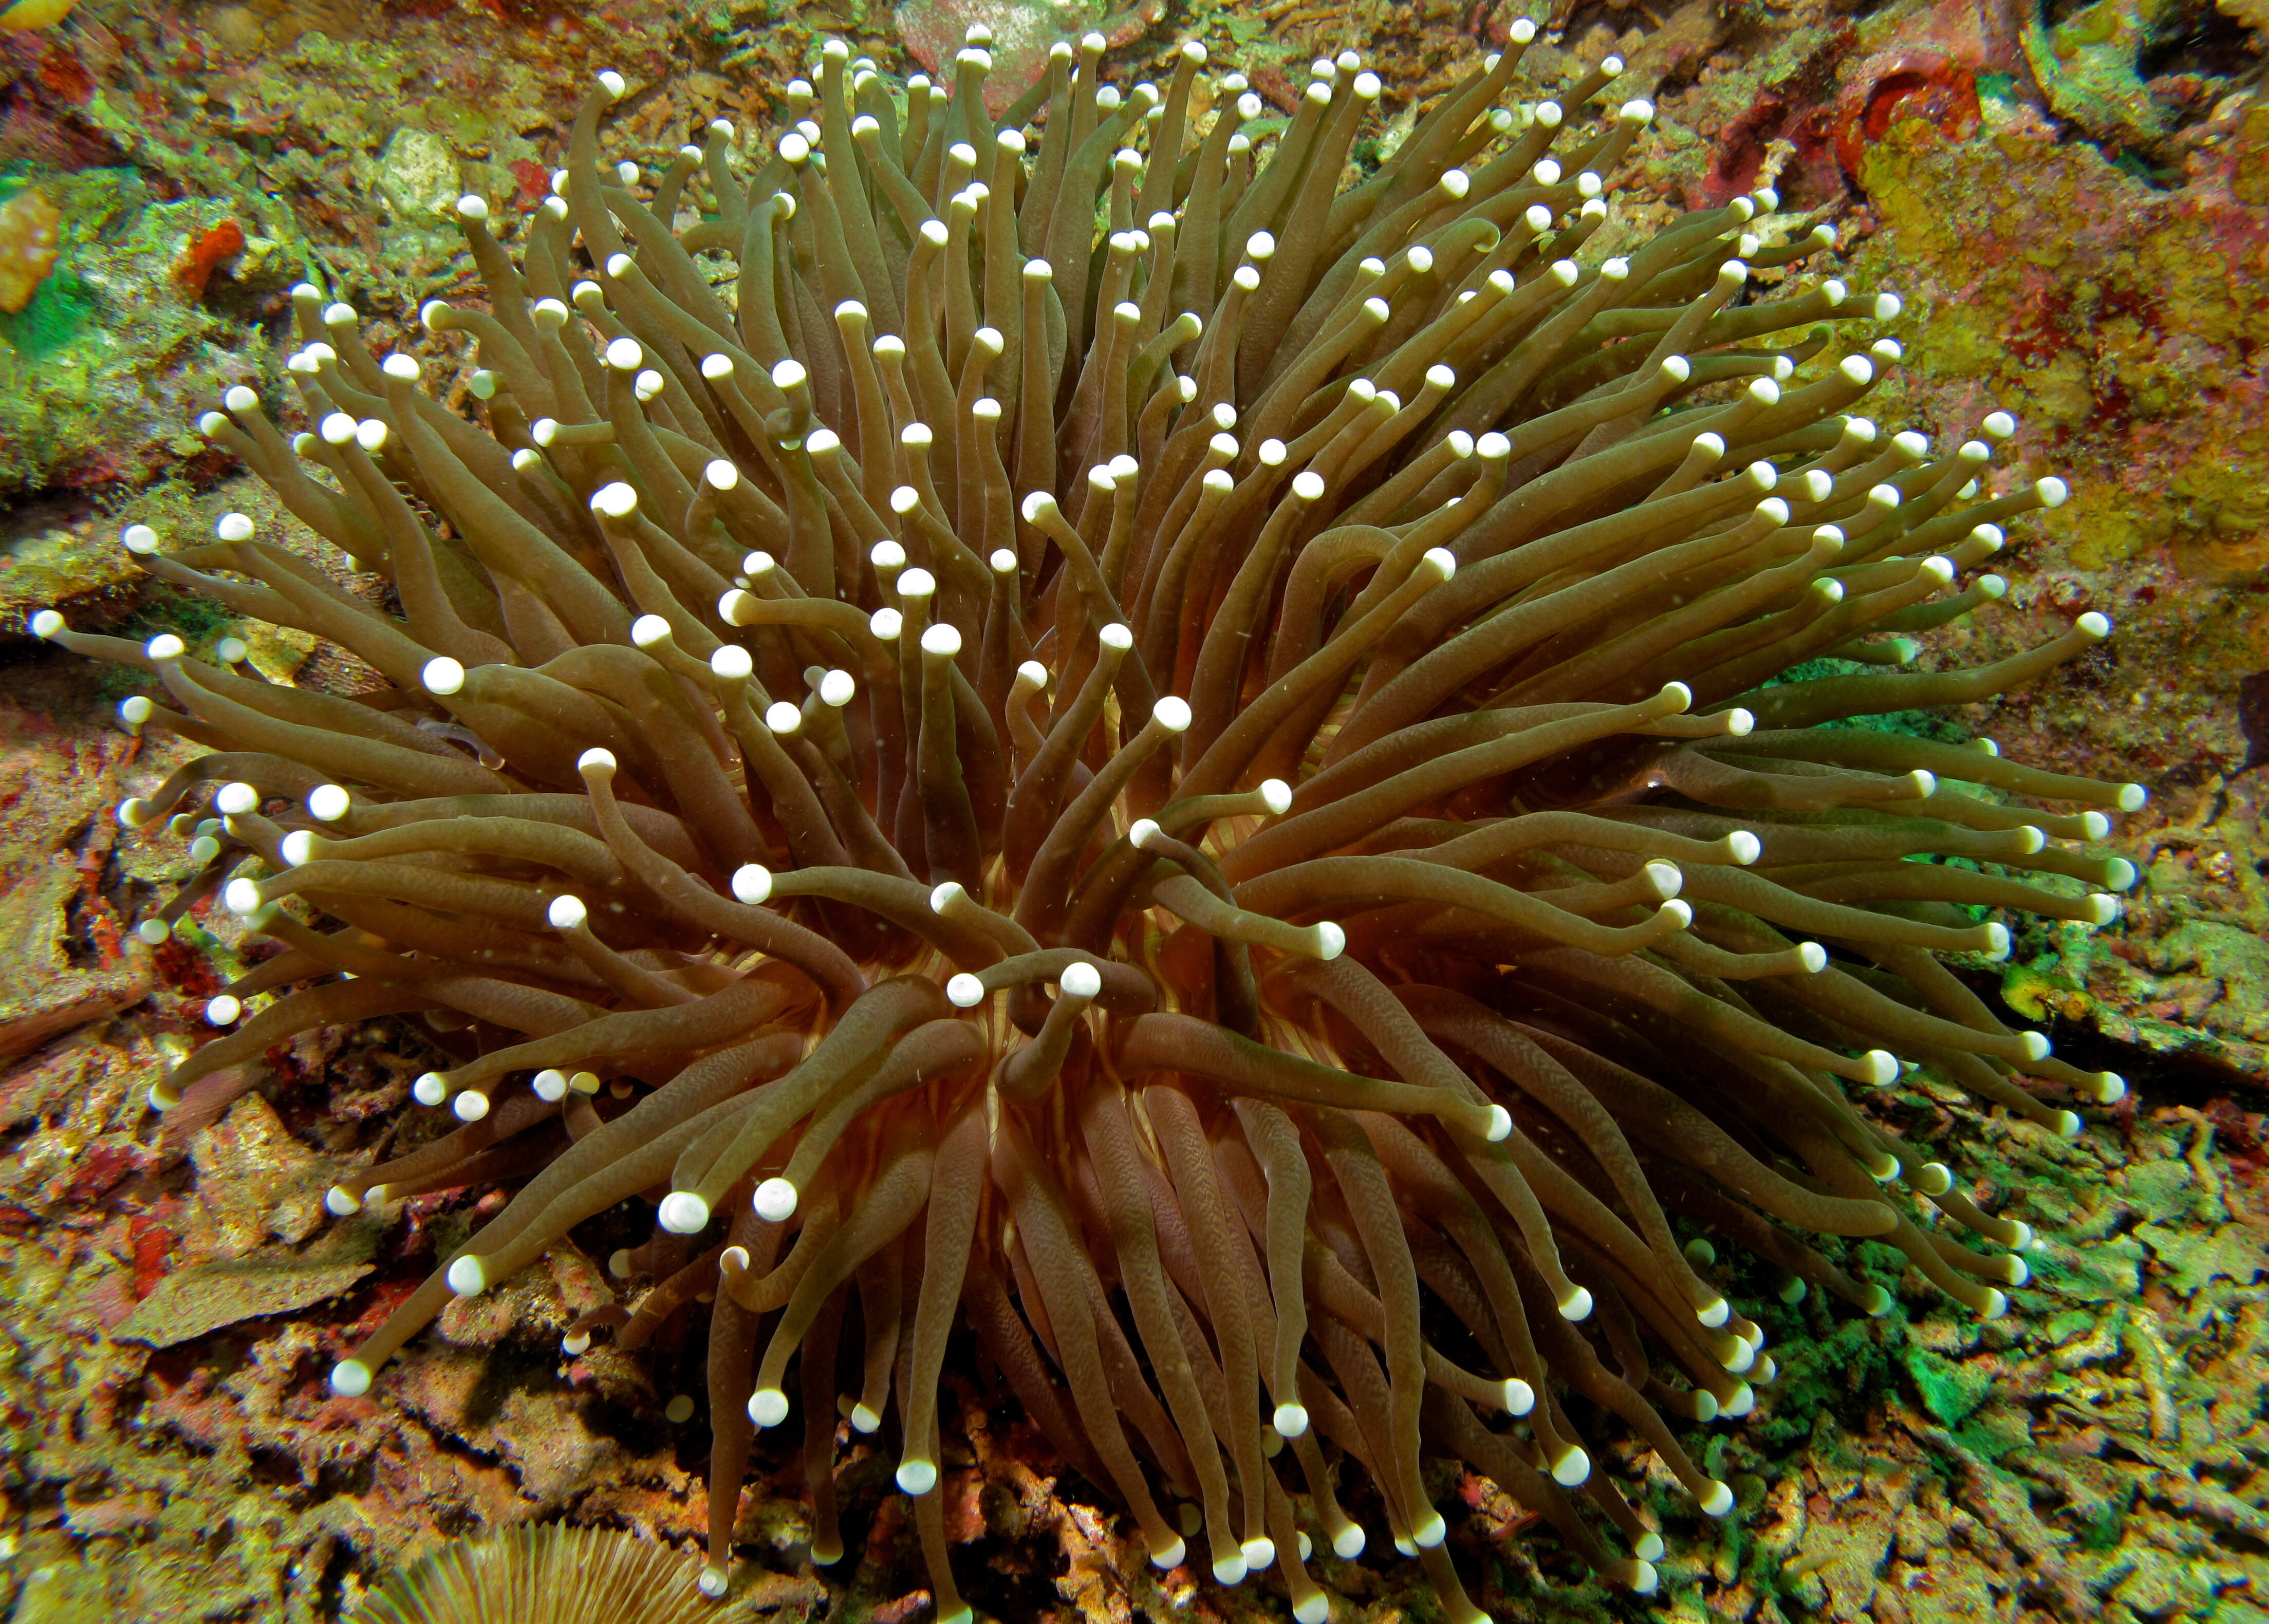 Image of mushroom coral